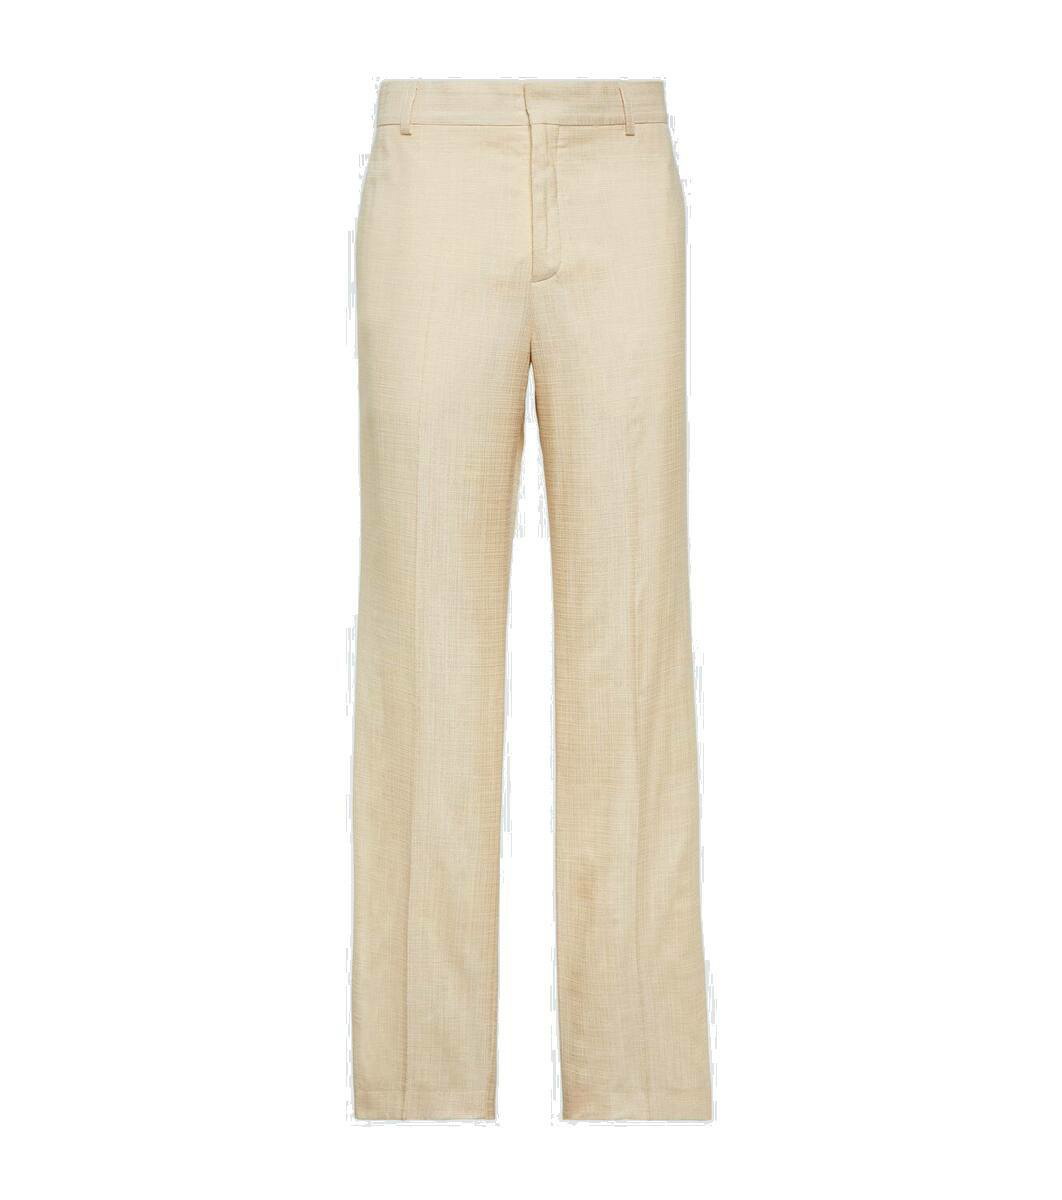 Spiritus Men Brown Trousers - Selling Fast at Pantaloons.com